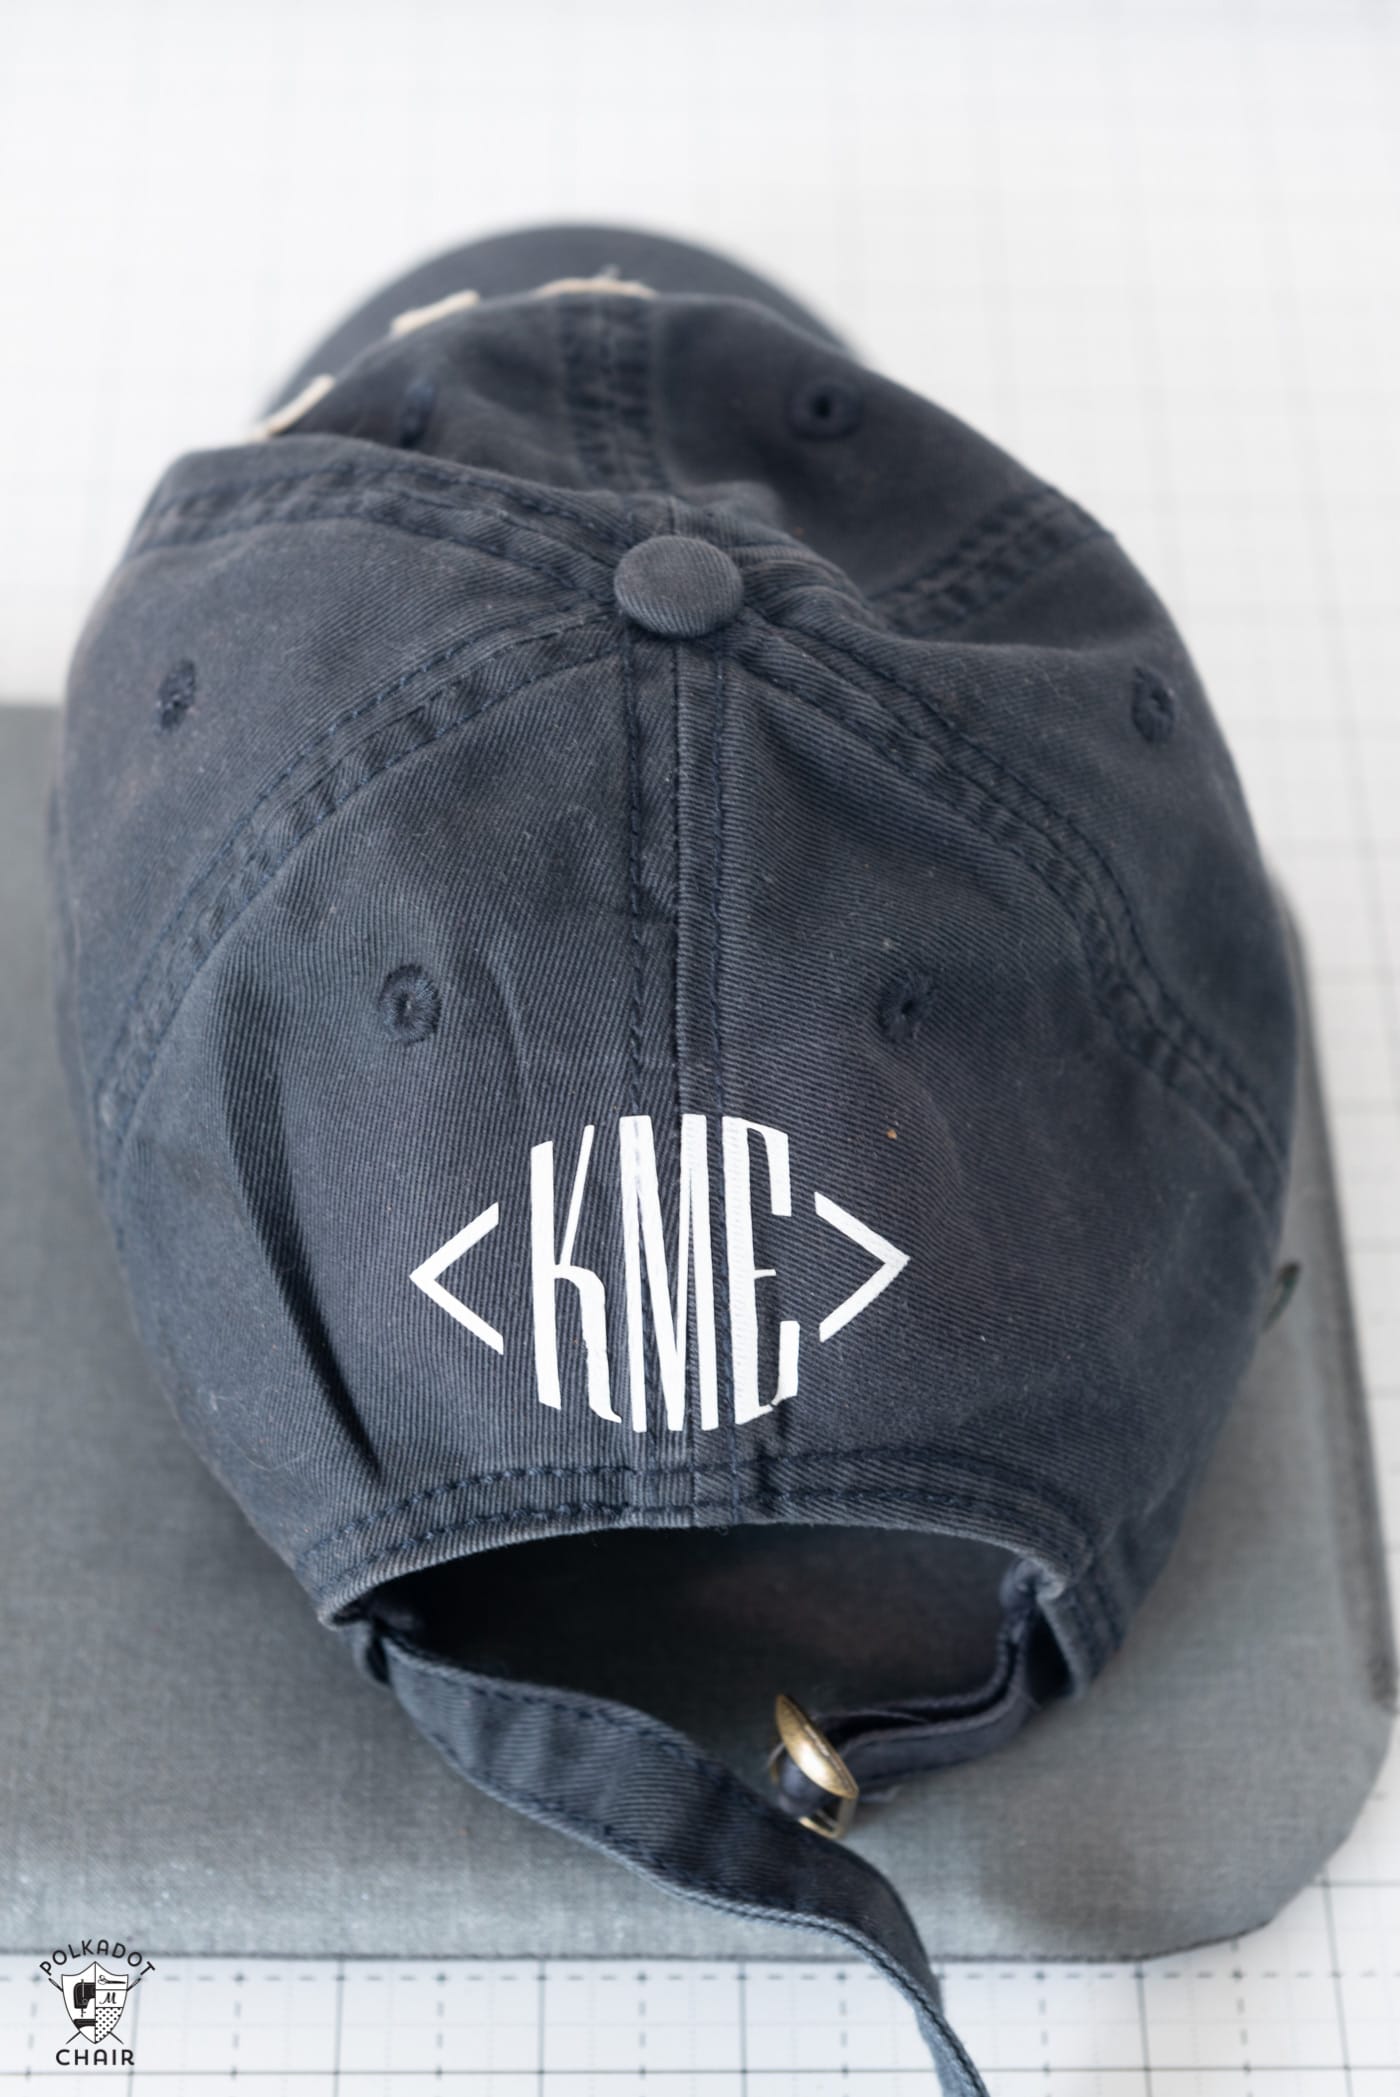  A navy baseball cap with white vinyl monogram "KME" on the back. 